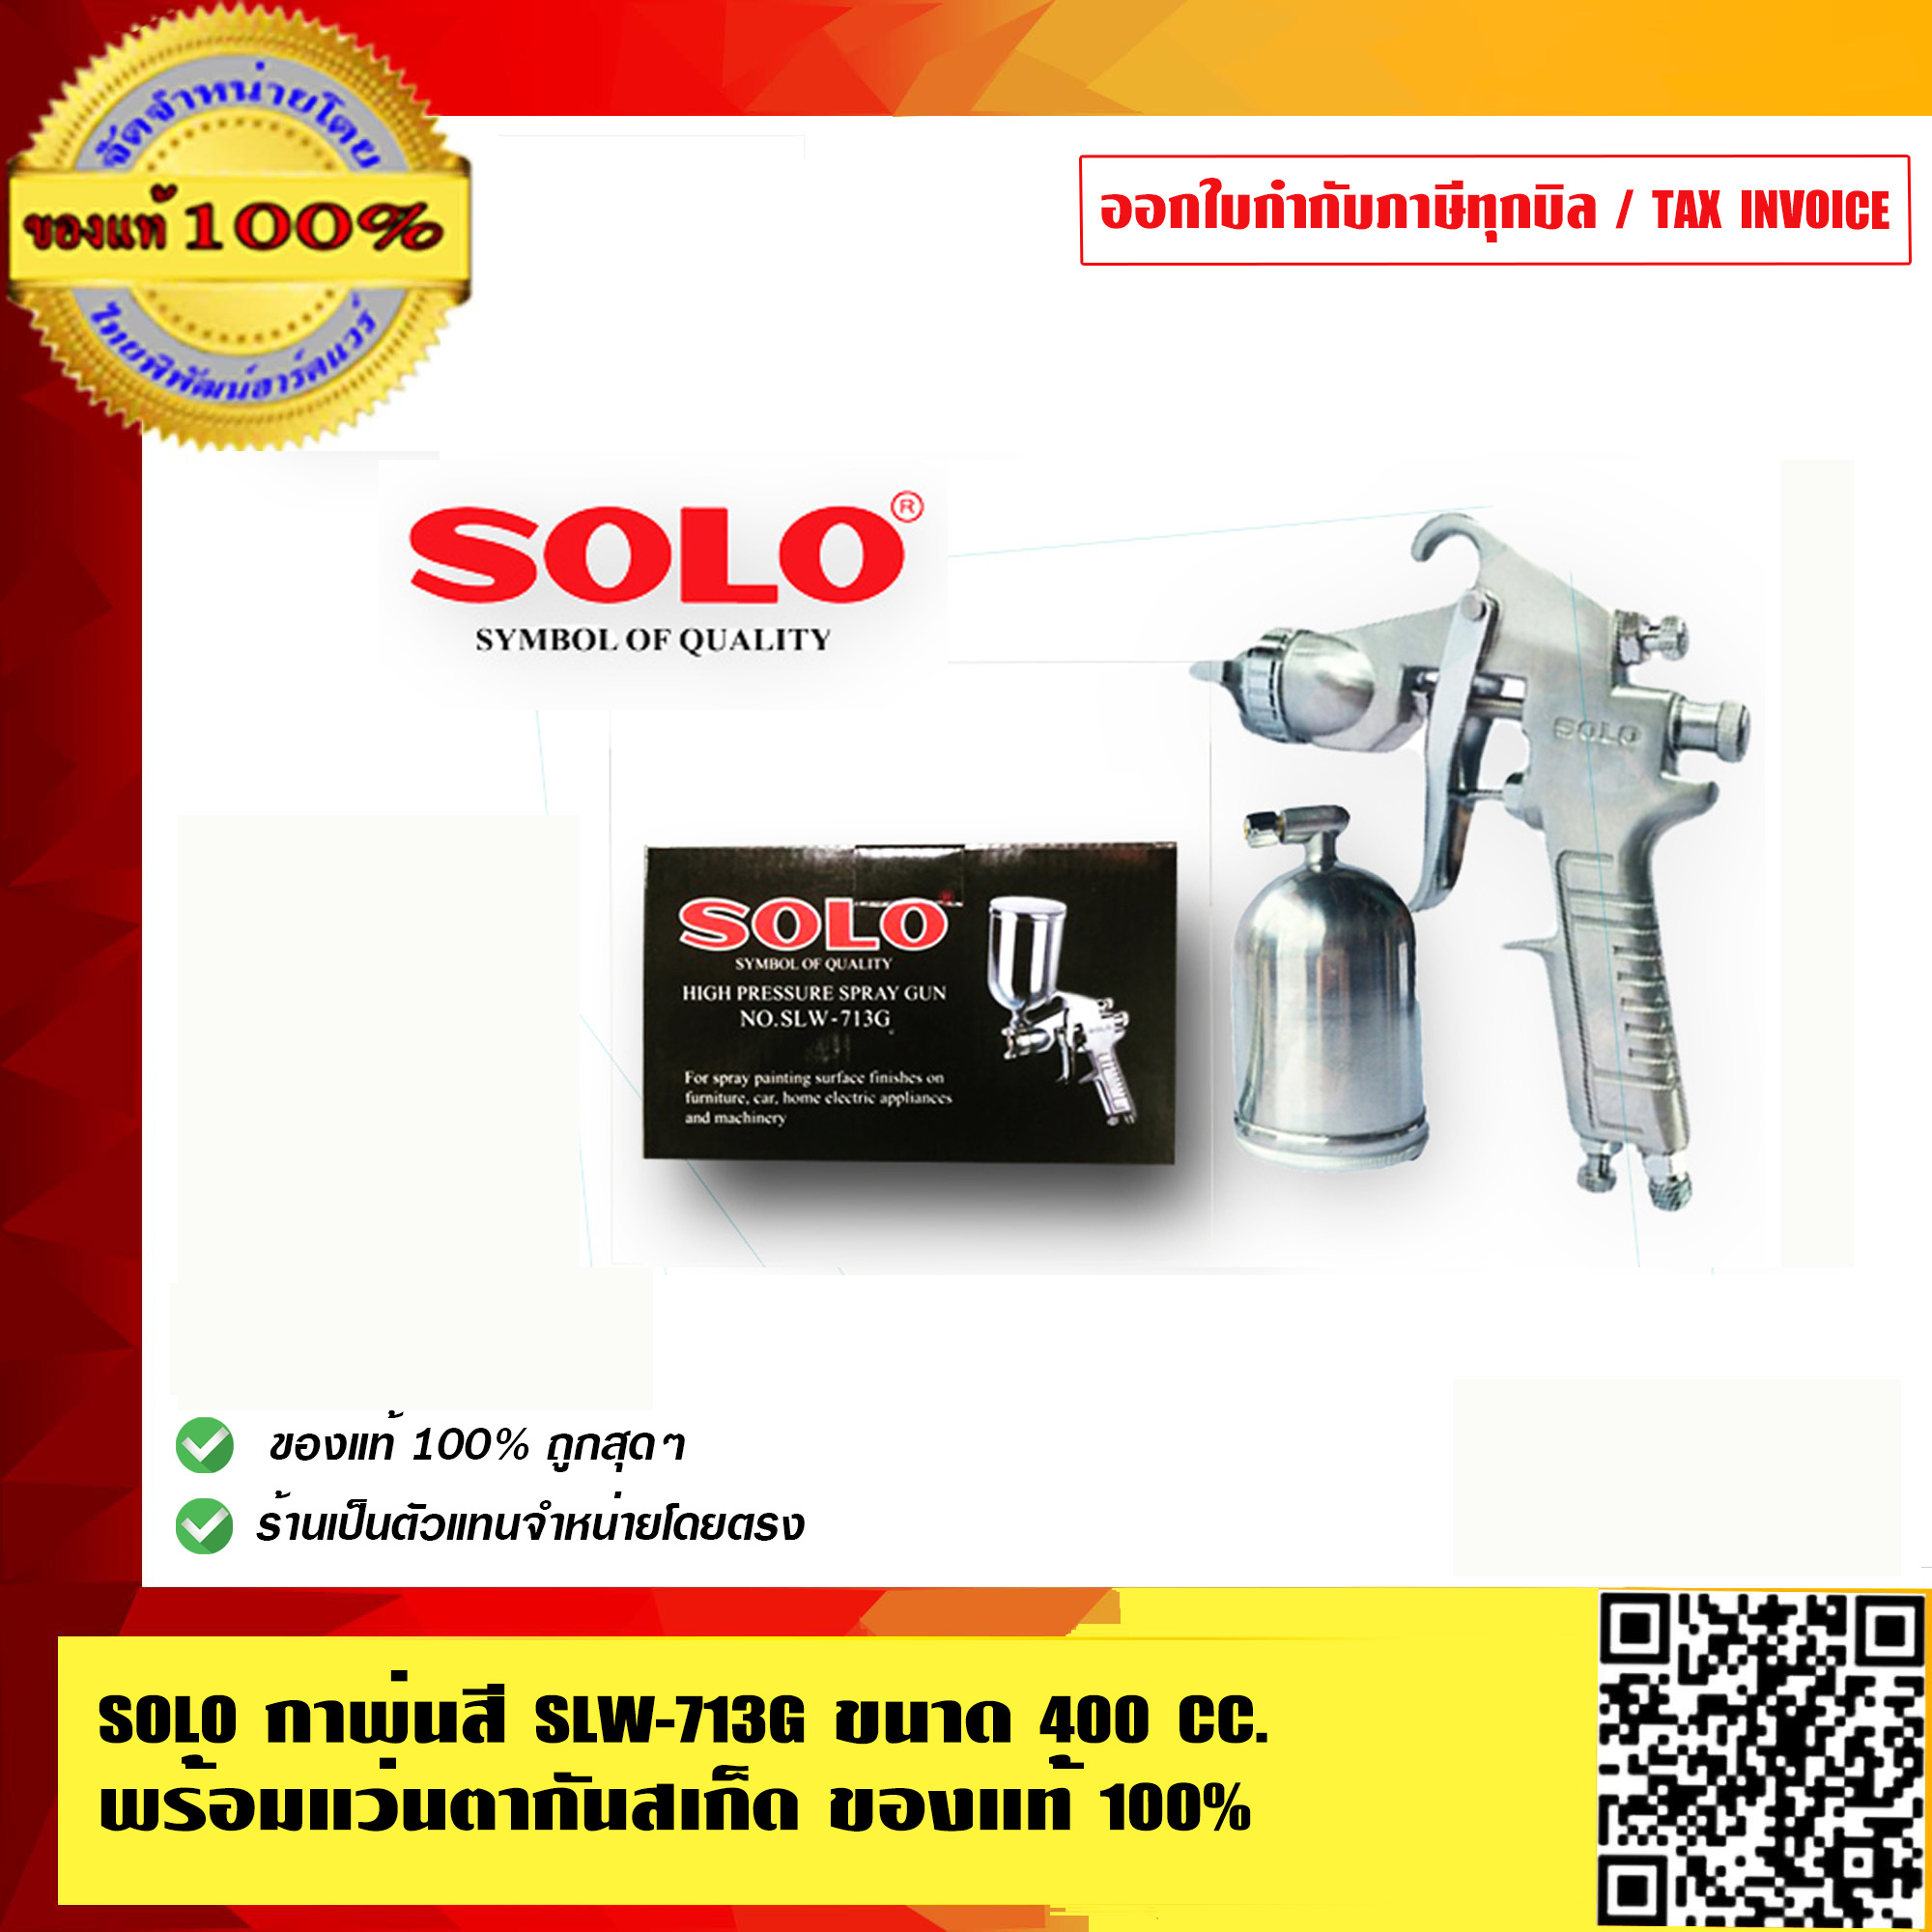 SOLO กาพ่นสี โซโล รุ่น  SLW-713G ของแท้ 100% ร้านเป็นตัวแทนจำหน่ายโดยตรง